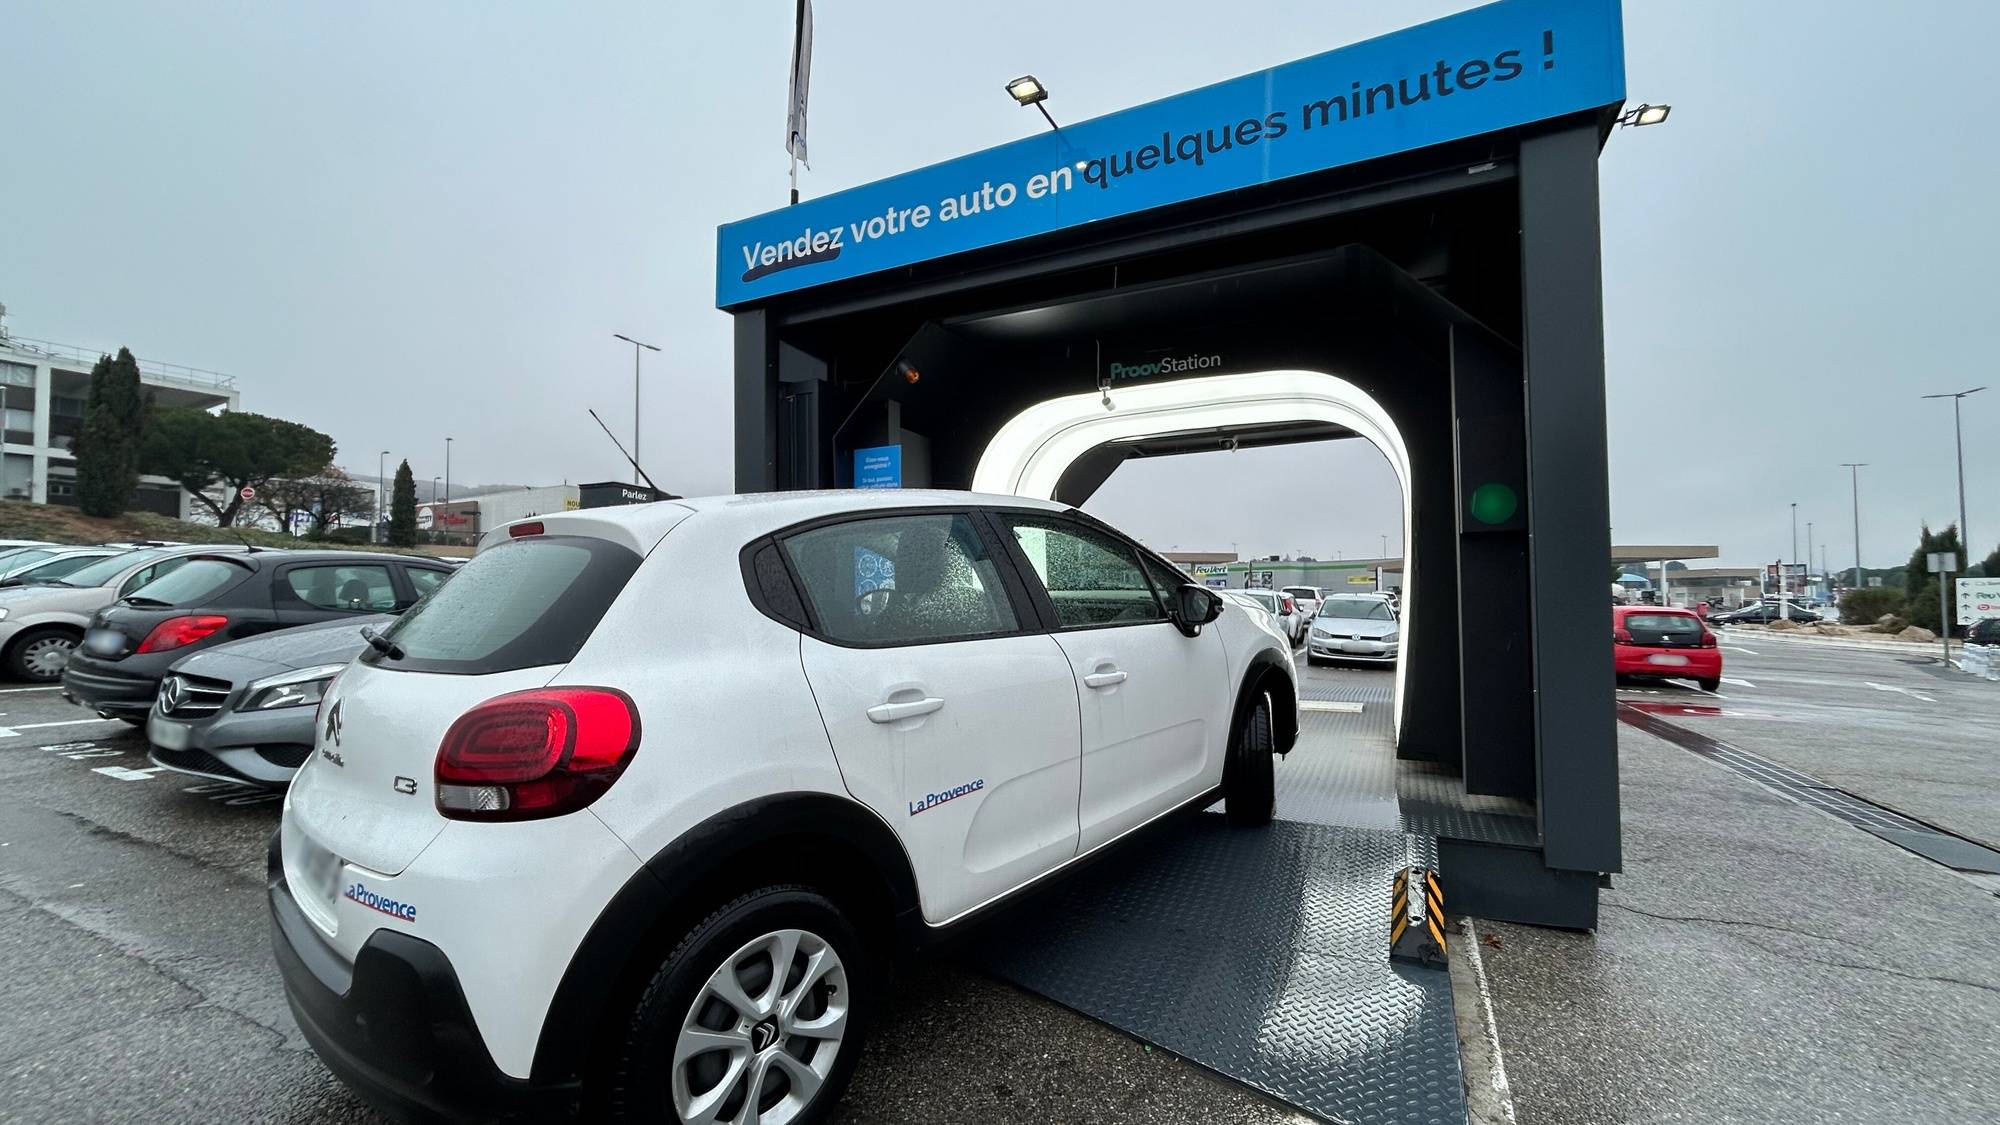 , On a testé le portique qui scanne votre voiture pour la racheter « en quelques minutes » installé à Vitrolles